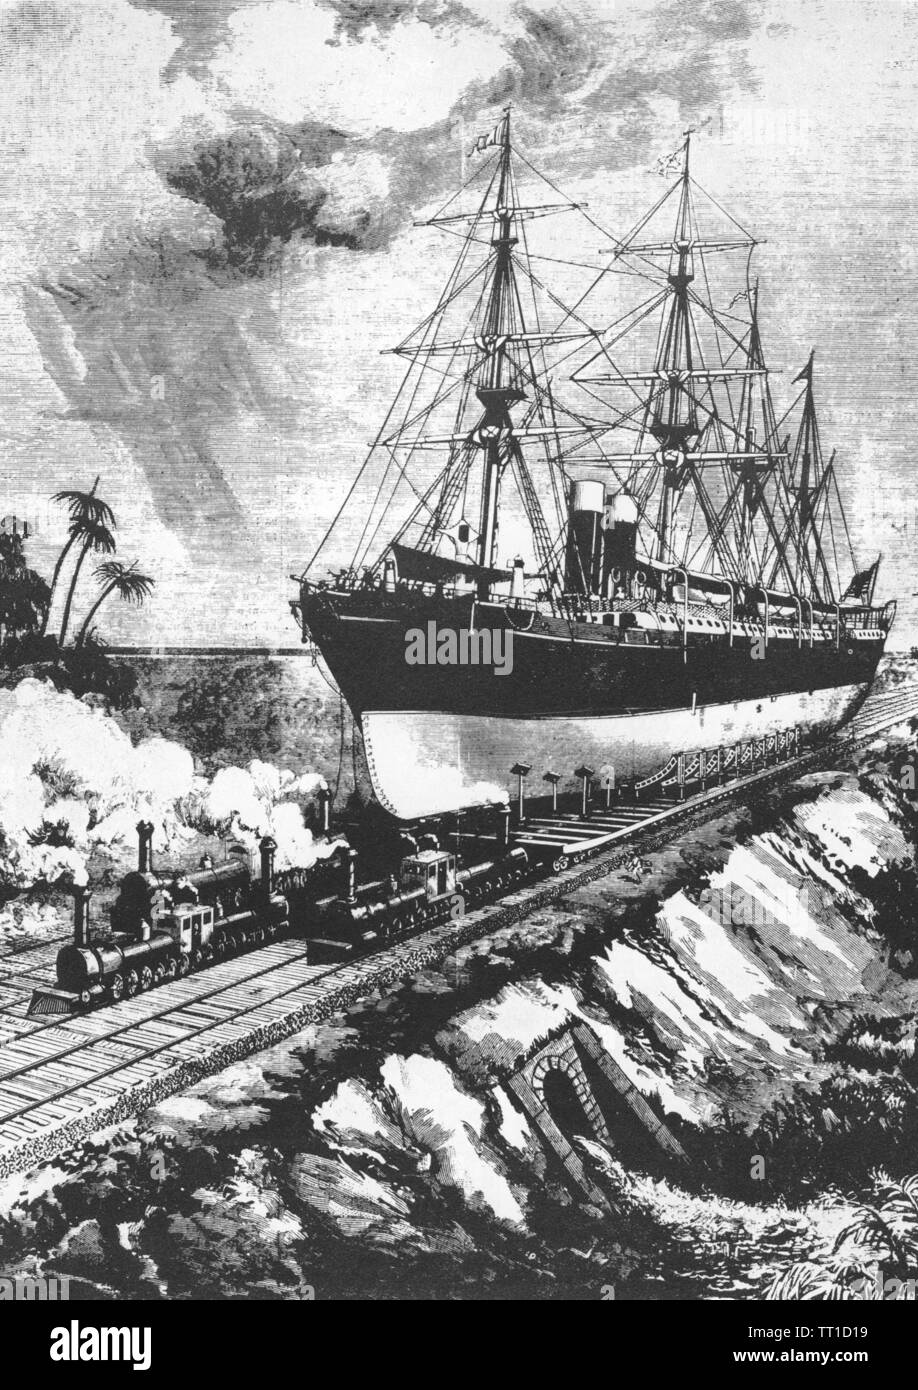 Canale di Panama illustrazione futuristico da Scientific American magazine nel 1884 mostra giant doppio locomotive boilerered tira una nave su una linea ferroviaria attraverso l'istmo di Panama Foto Stock